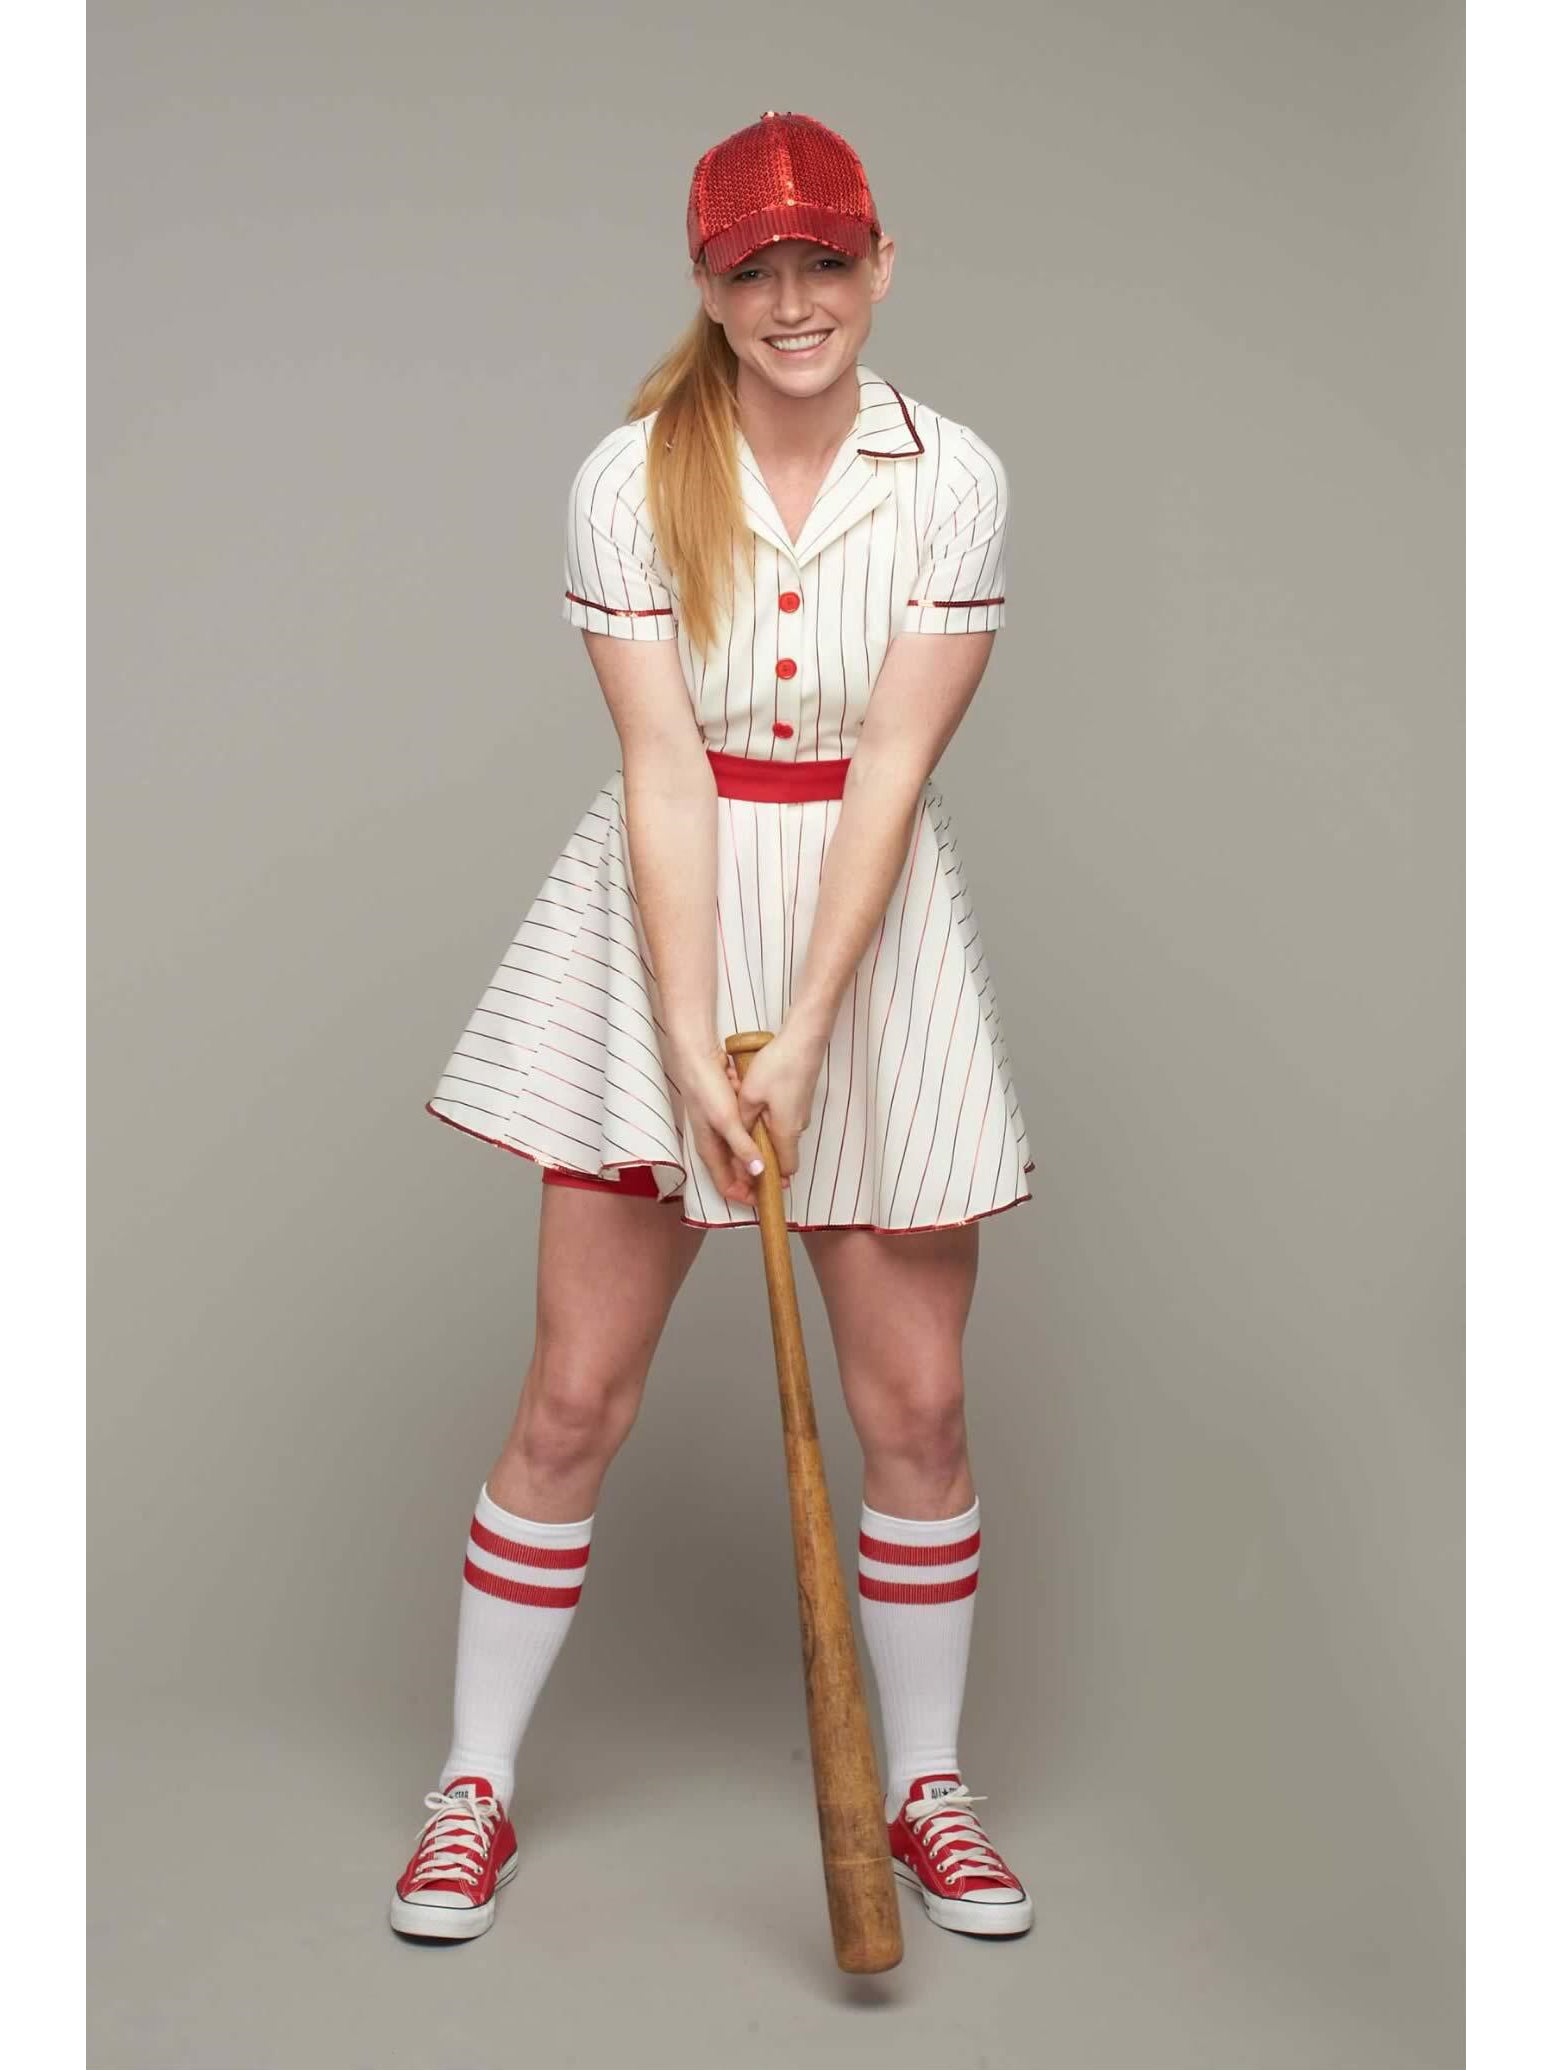 Praktisk Siesta Print Retro Baseball Player Costume for Women – Chasing Fireflies